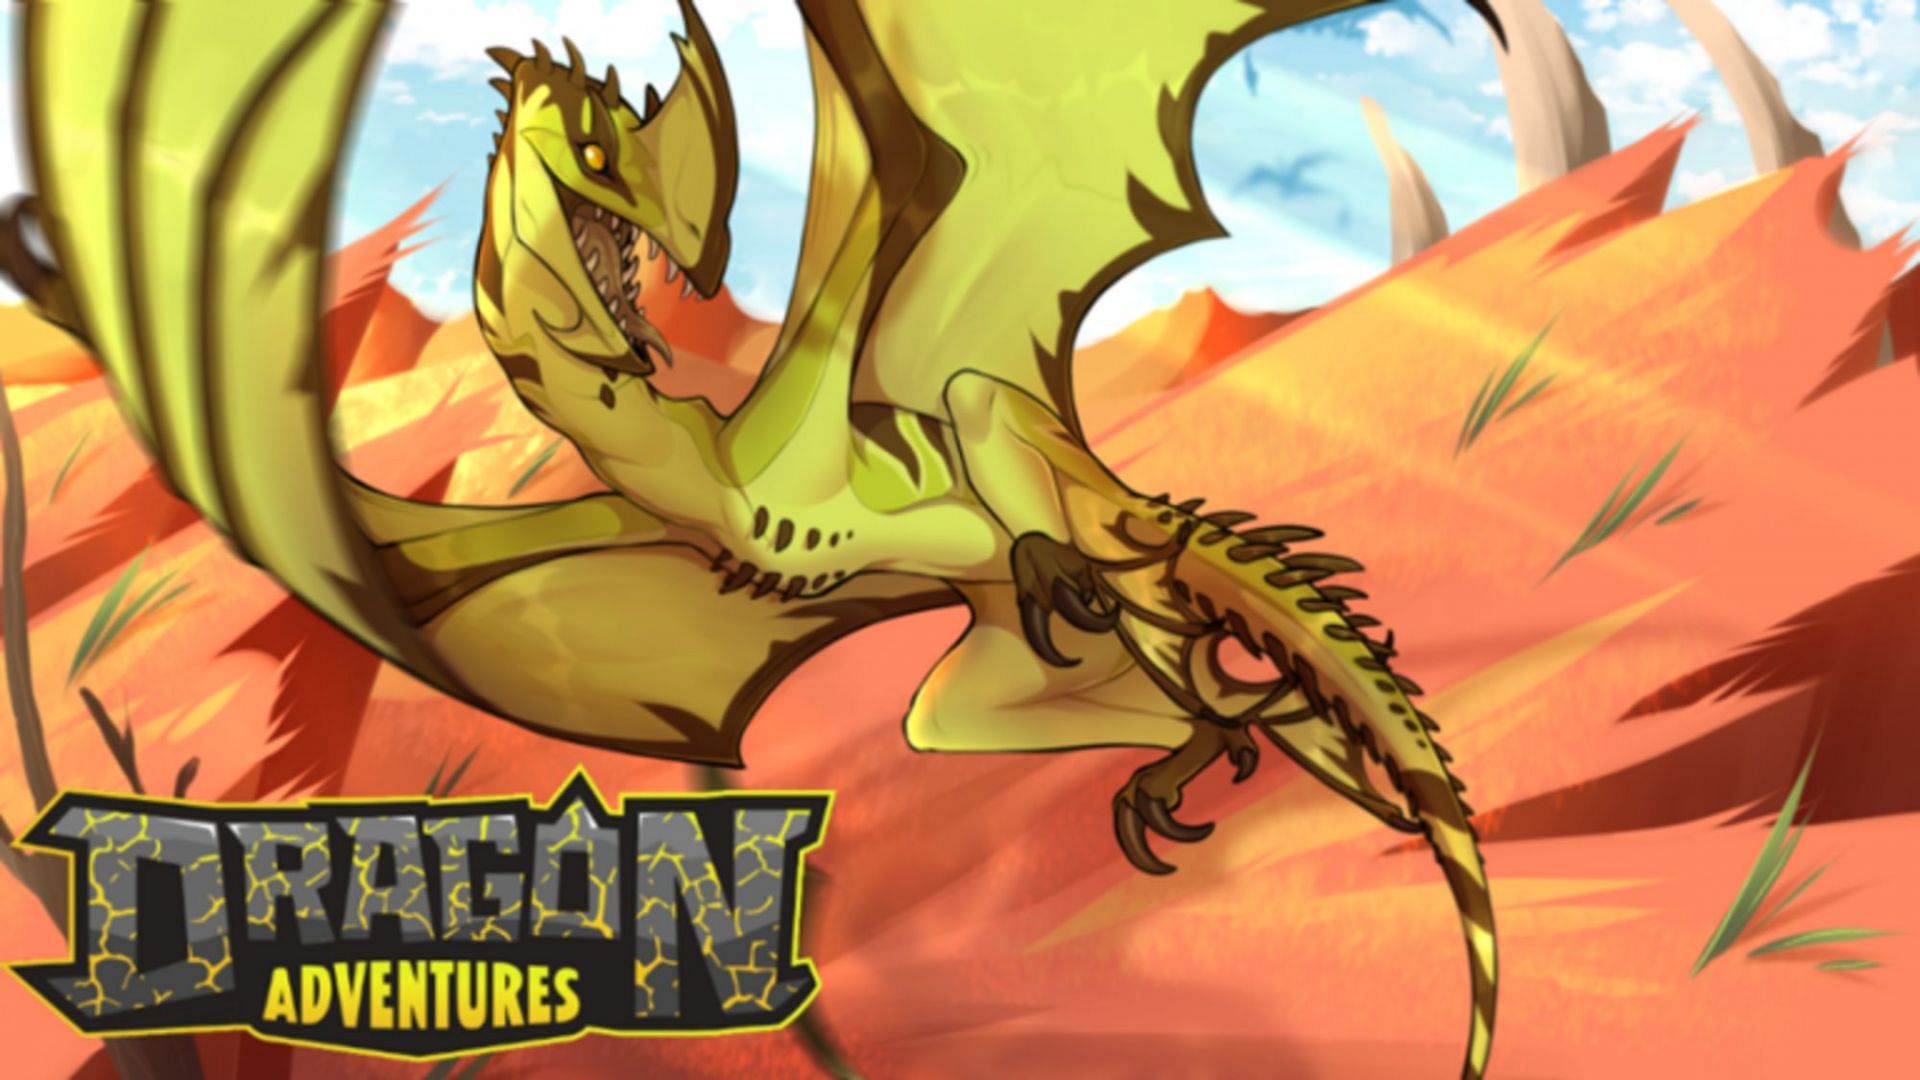 Trade Roblox Dragon Adventures Items